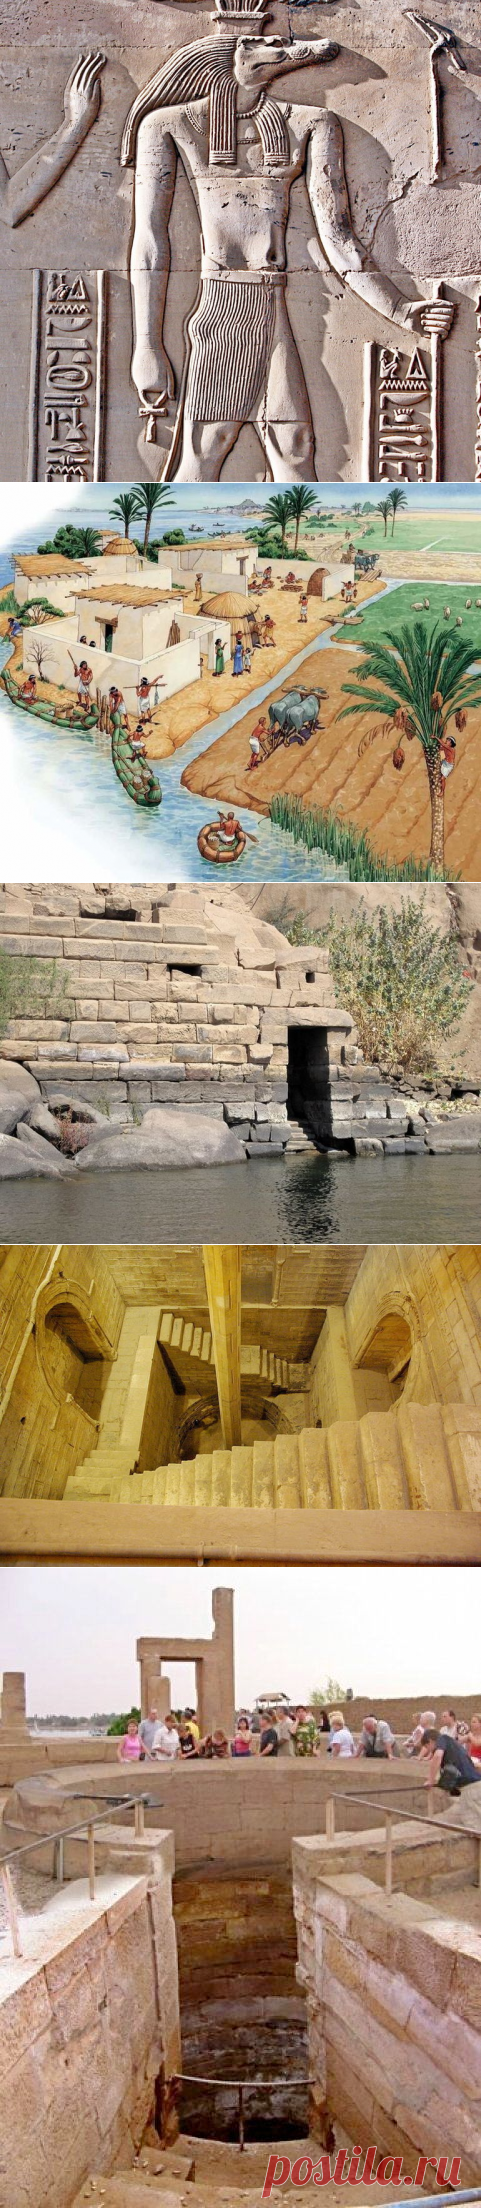 Ниломеры: древние египтяне строили не только храмы и пирамиды, но и водомерные посты